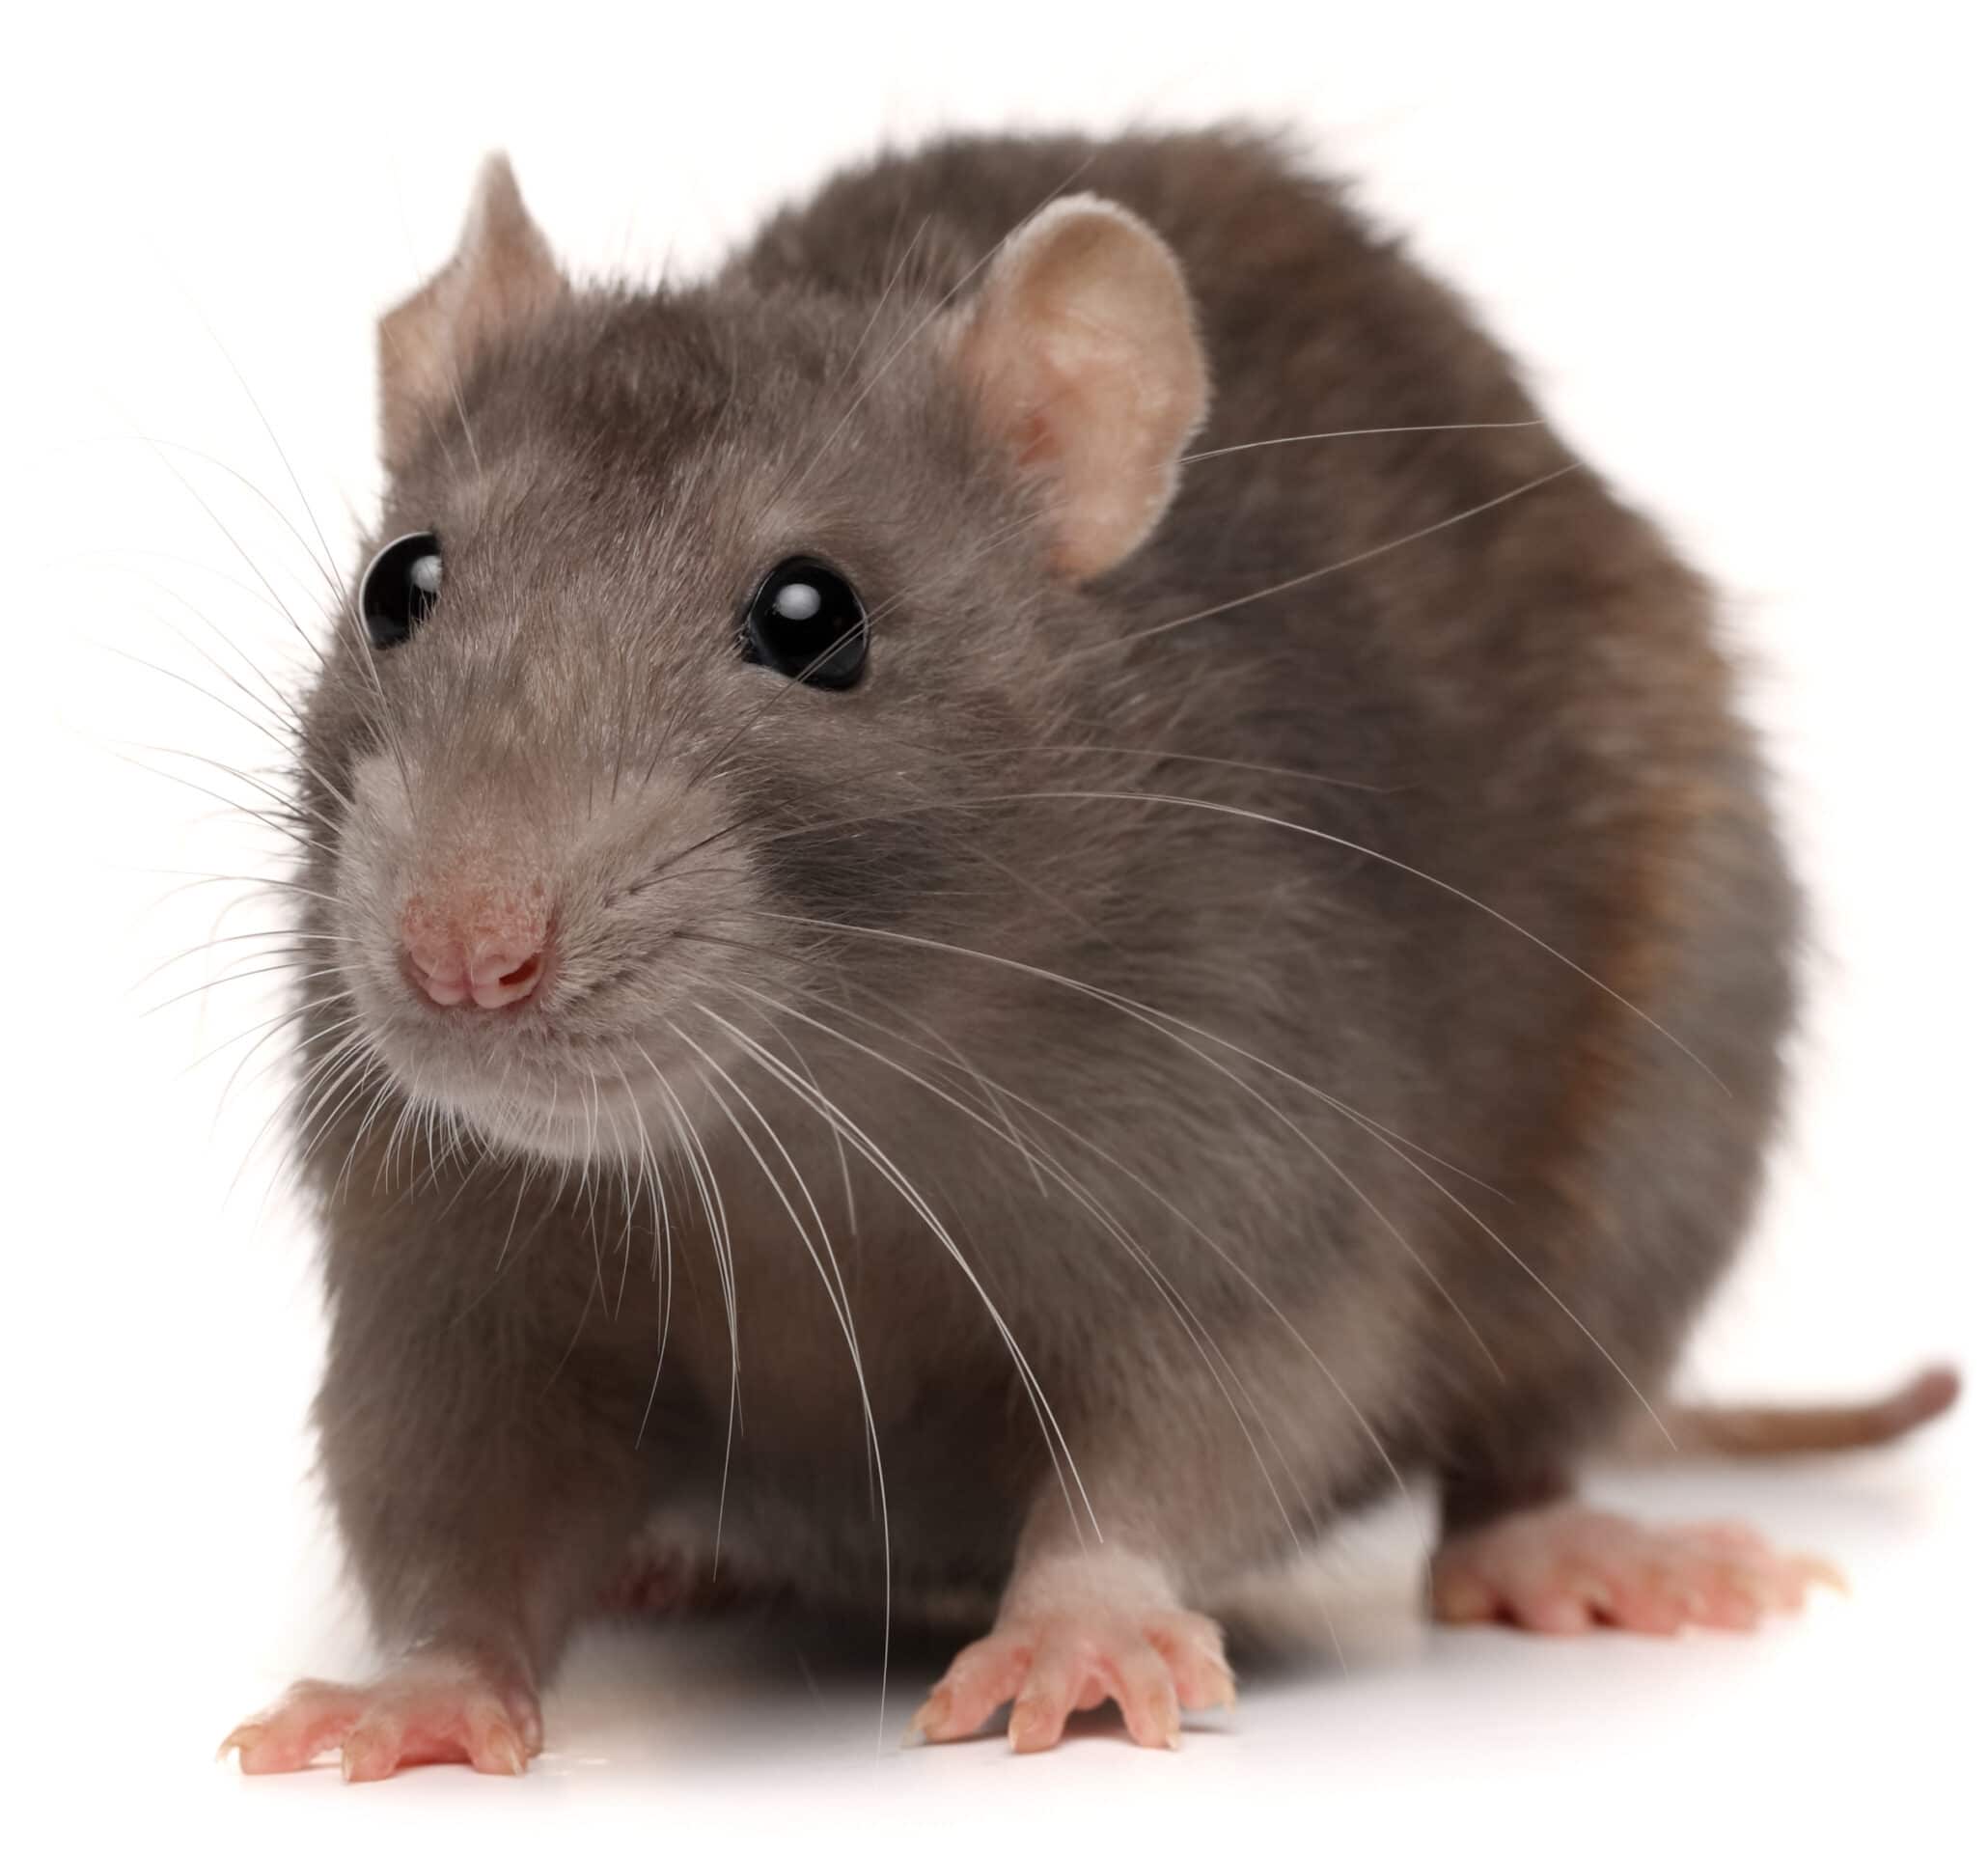 Hare Rytmisk bagværk Sikringsaftale mod rotter - Dansk Skadedyrskontrol